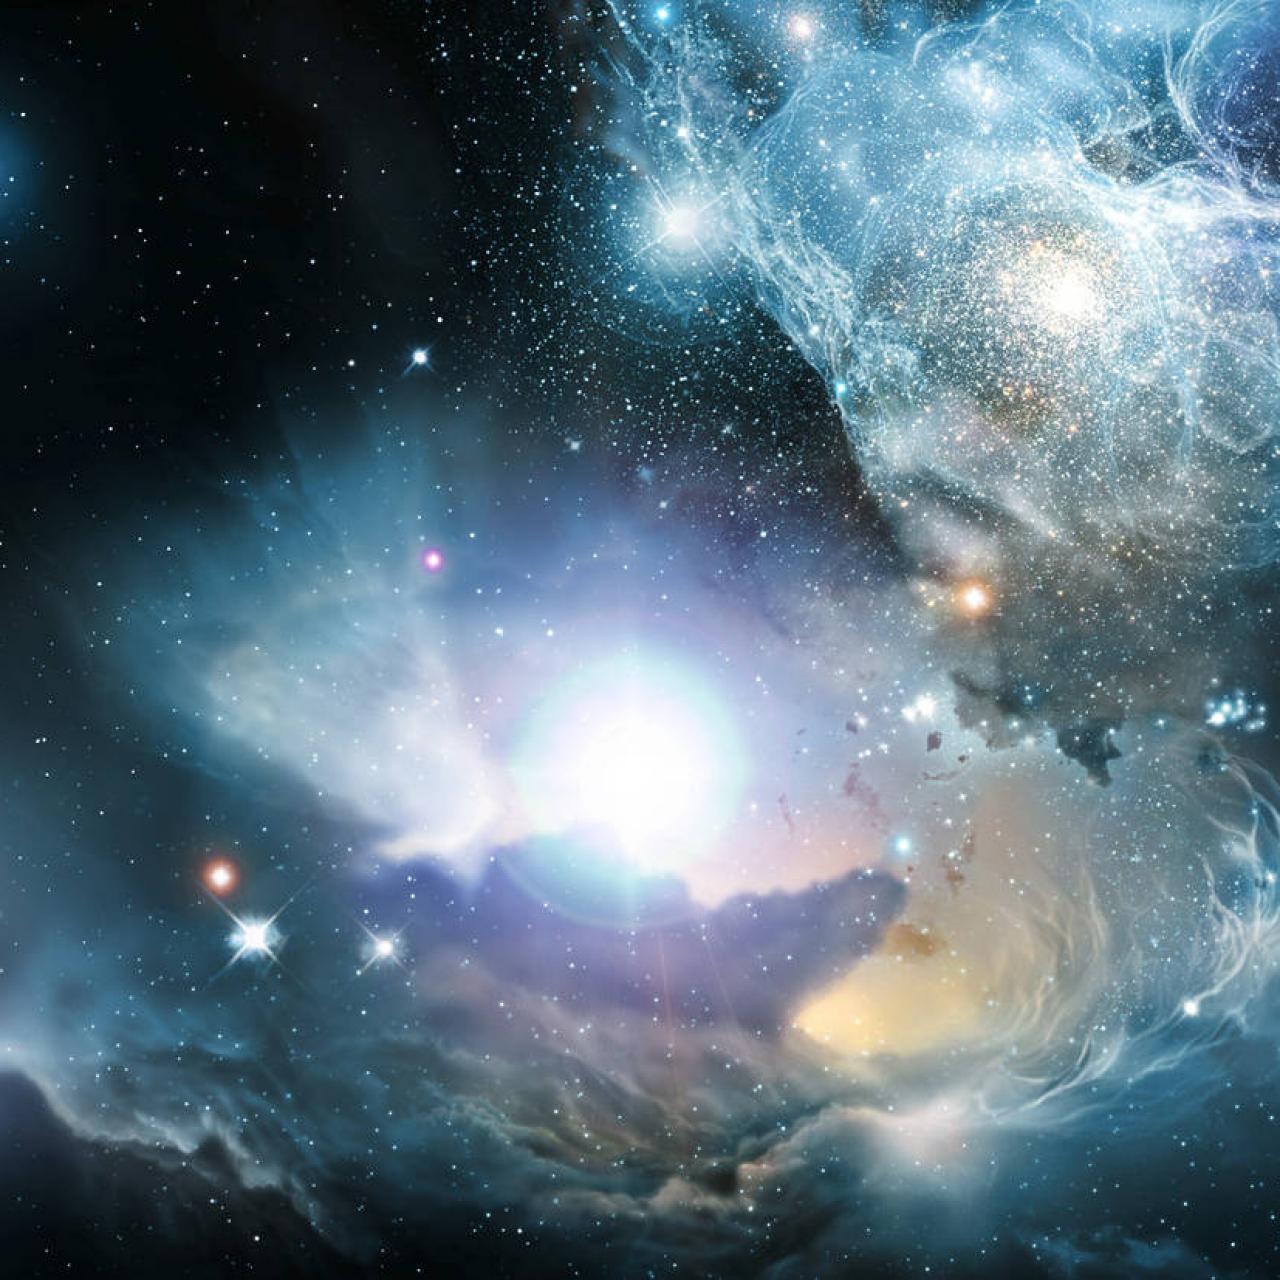 Newborn stars discovered in dark cosmic cloud